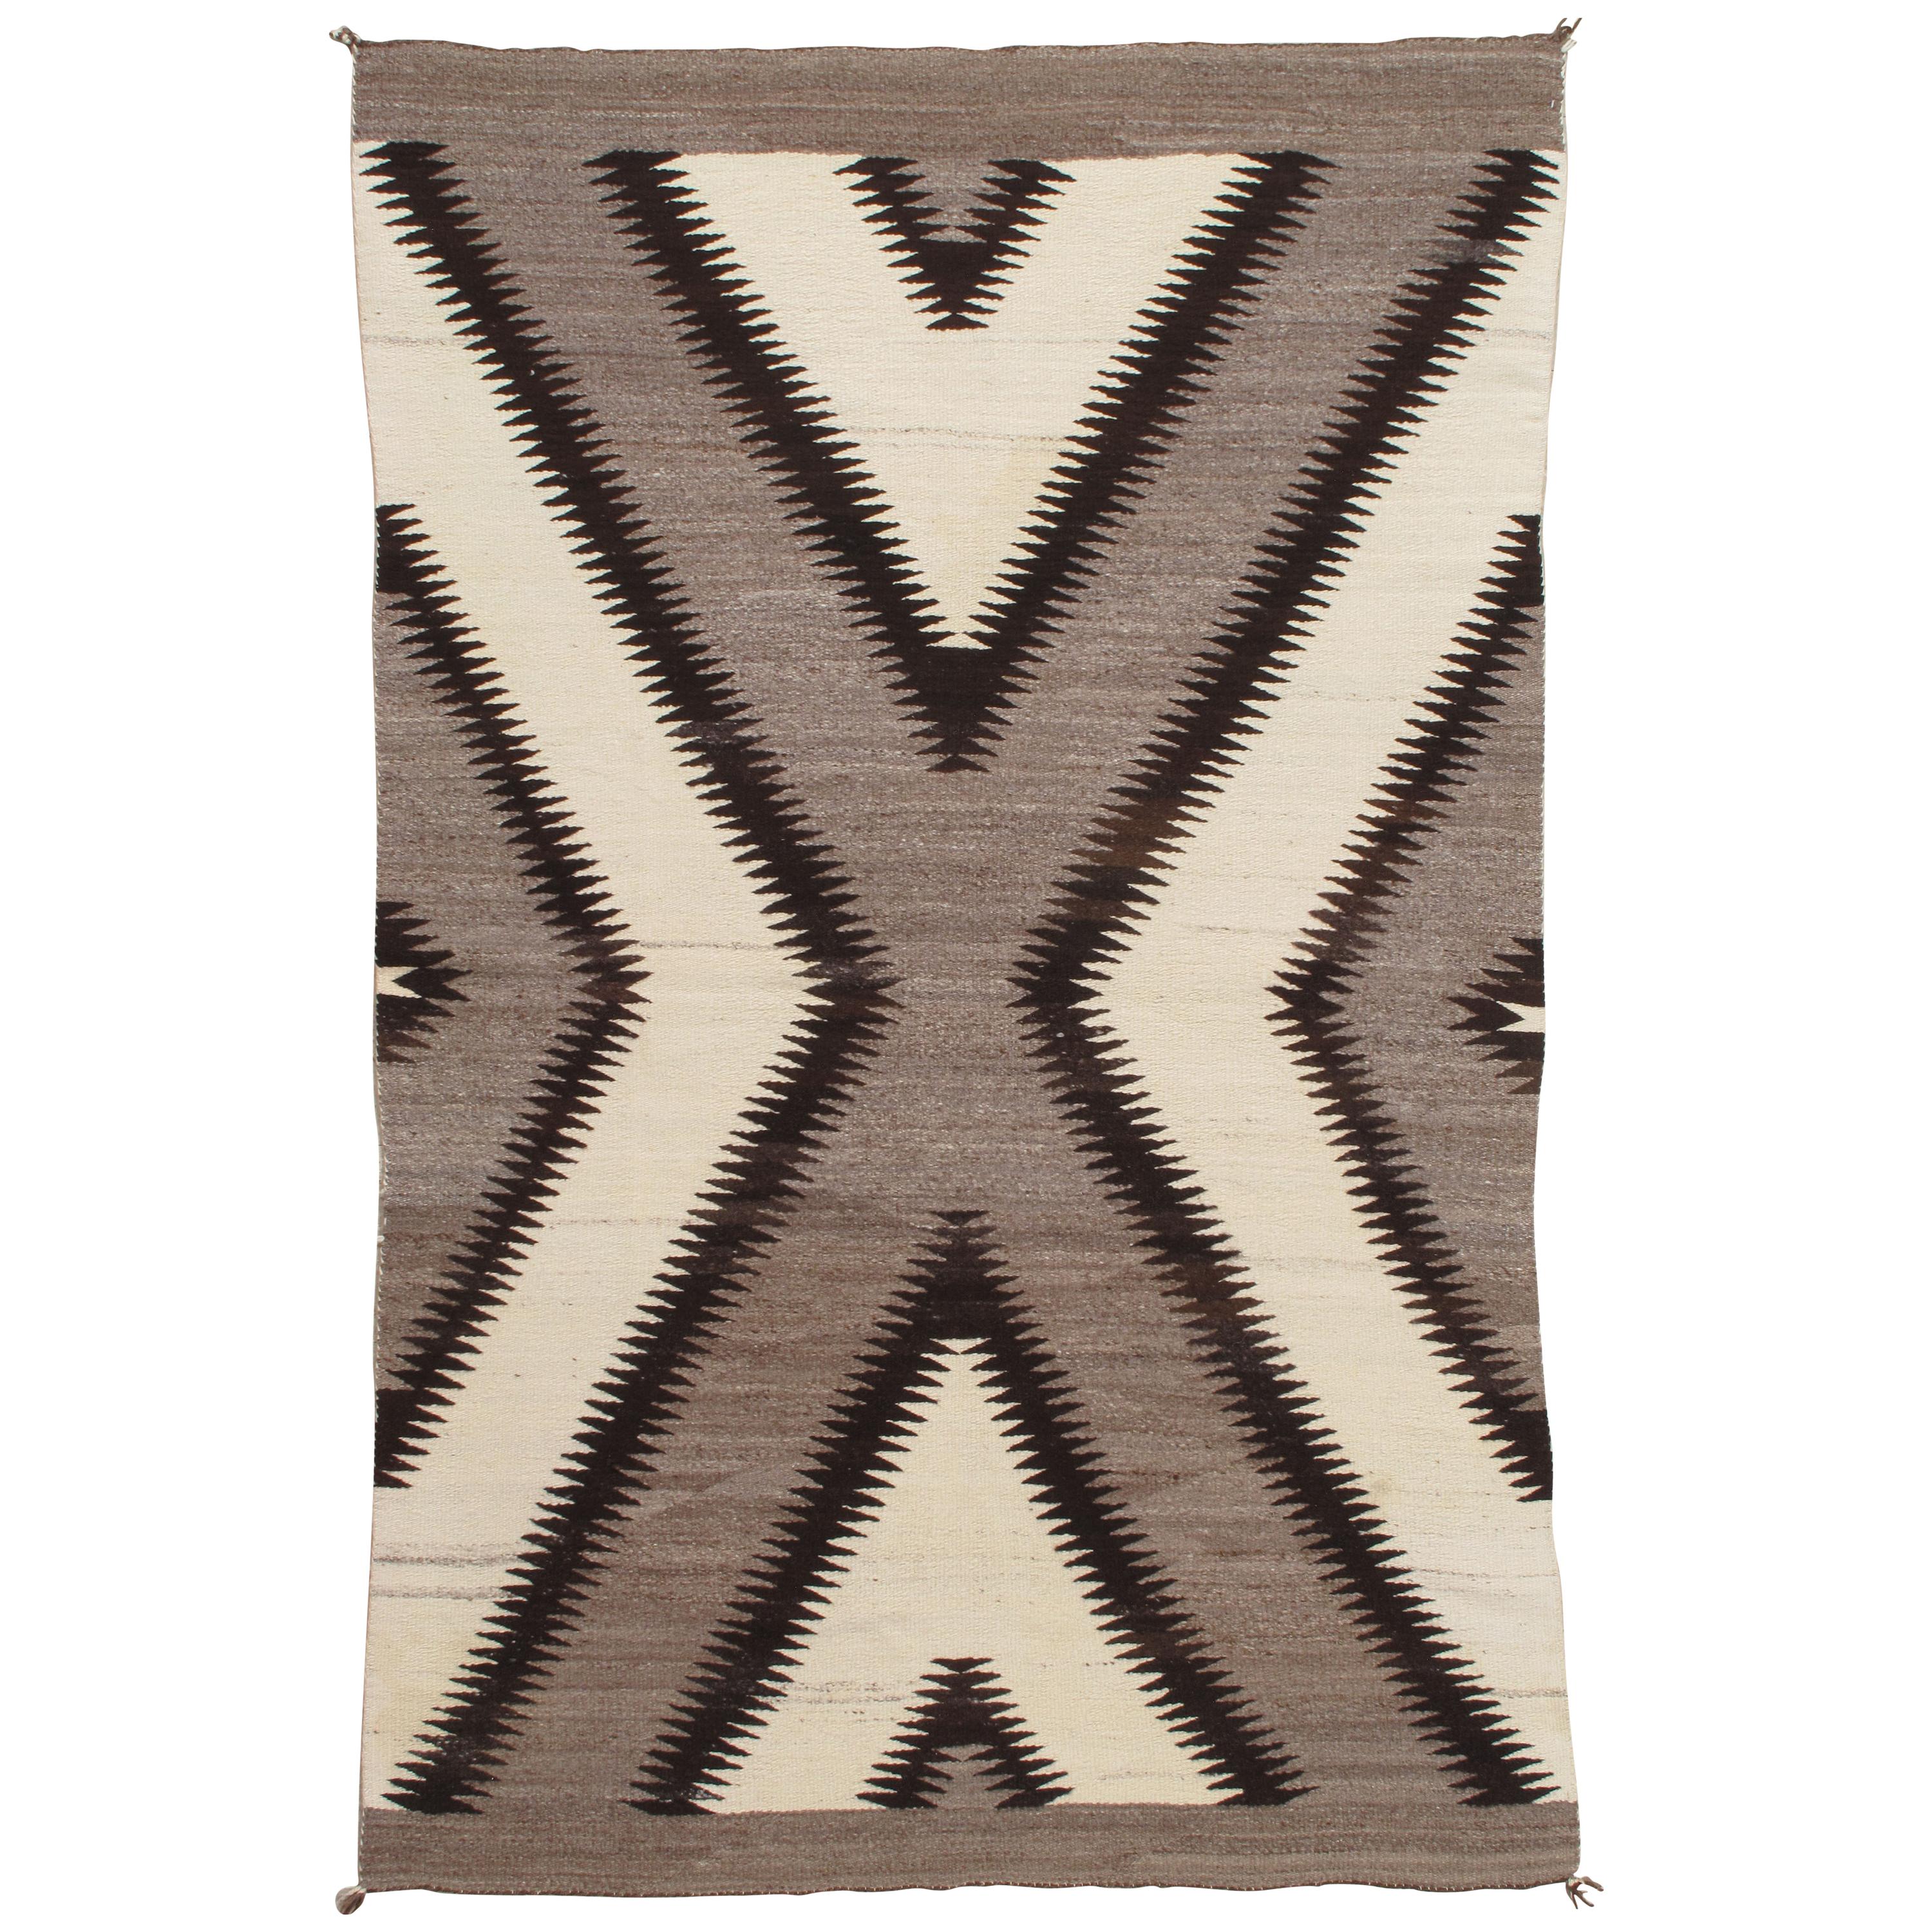 Antique Navajo Rug, Handmade Wool Oriental Rug, Gray, Ivory and Dark Brown